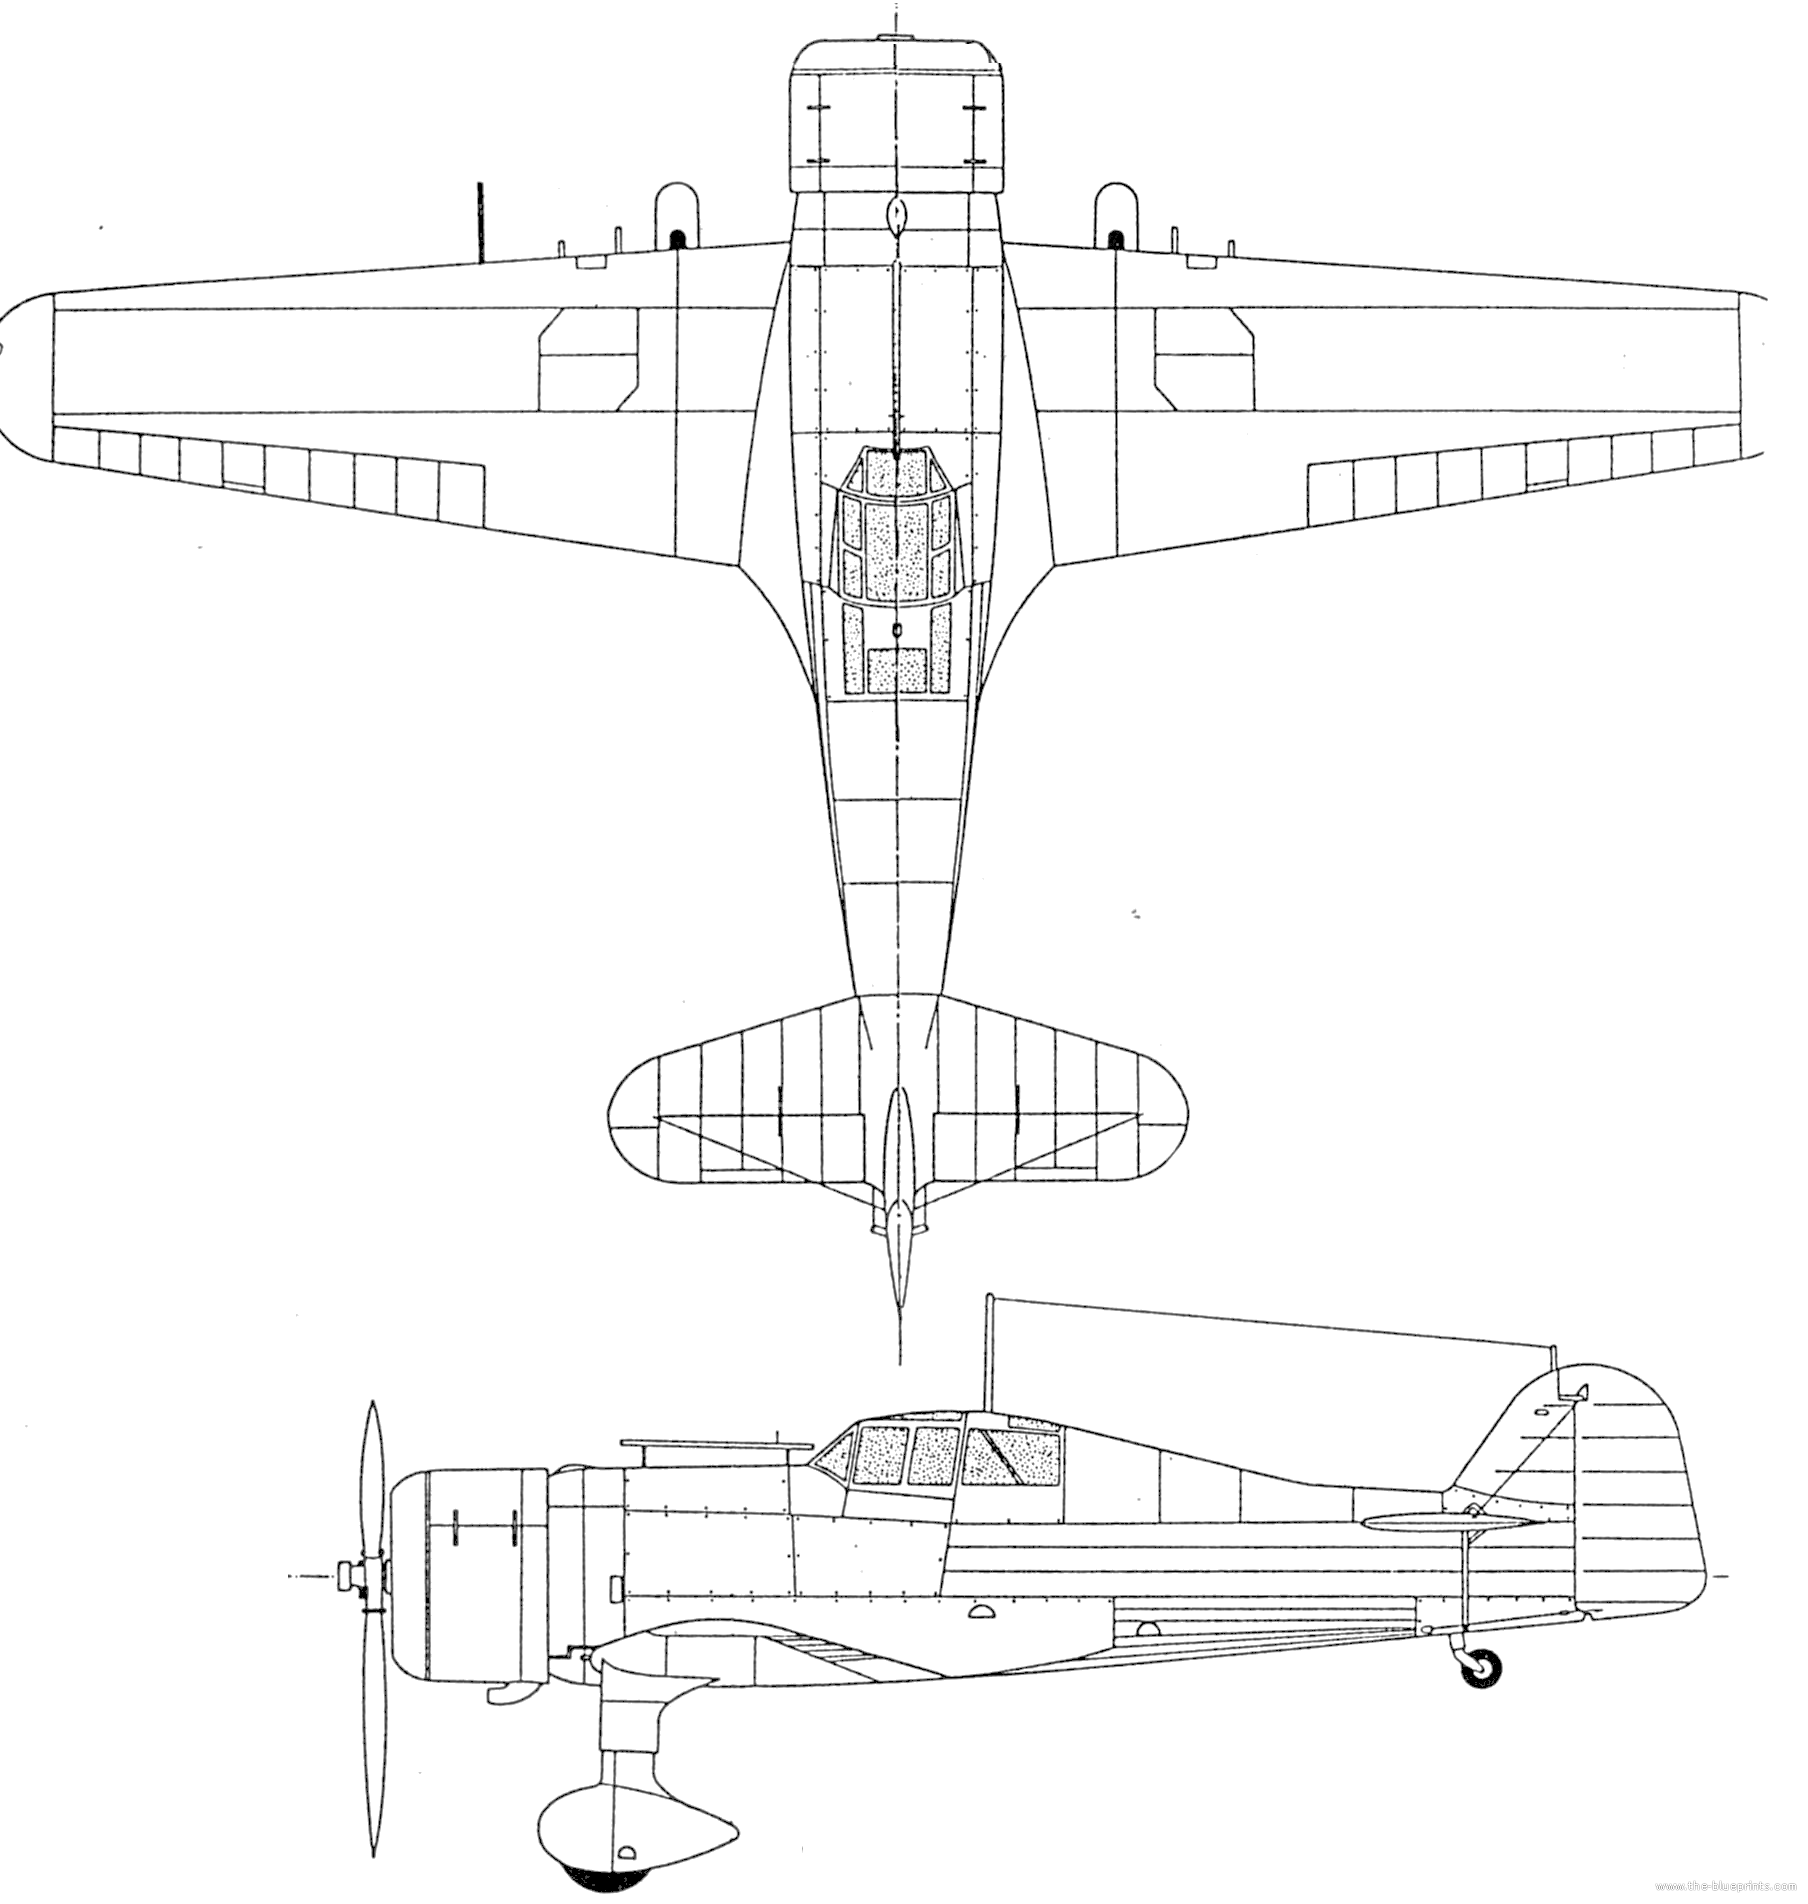 The Blueprintscom Blueprints WW2 Airplanes WW2 German